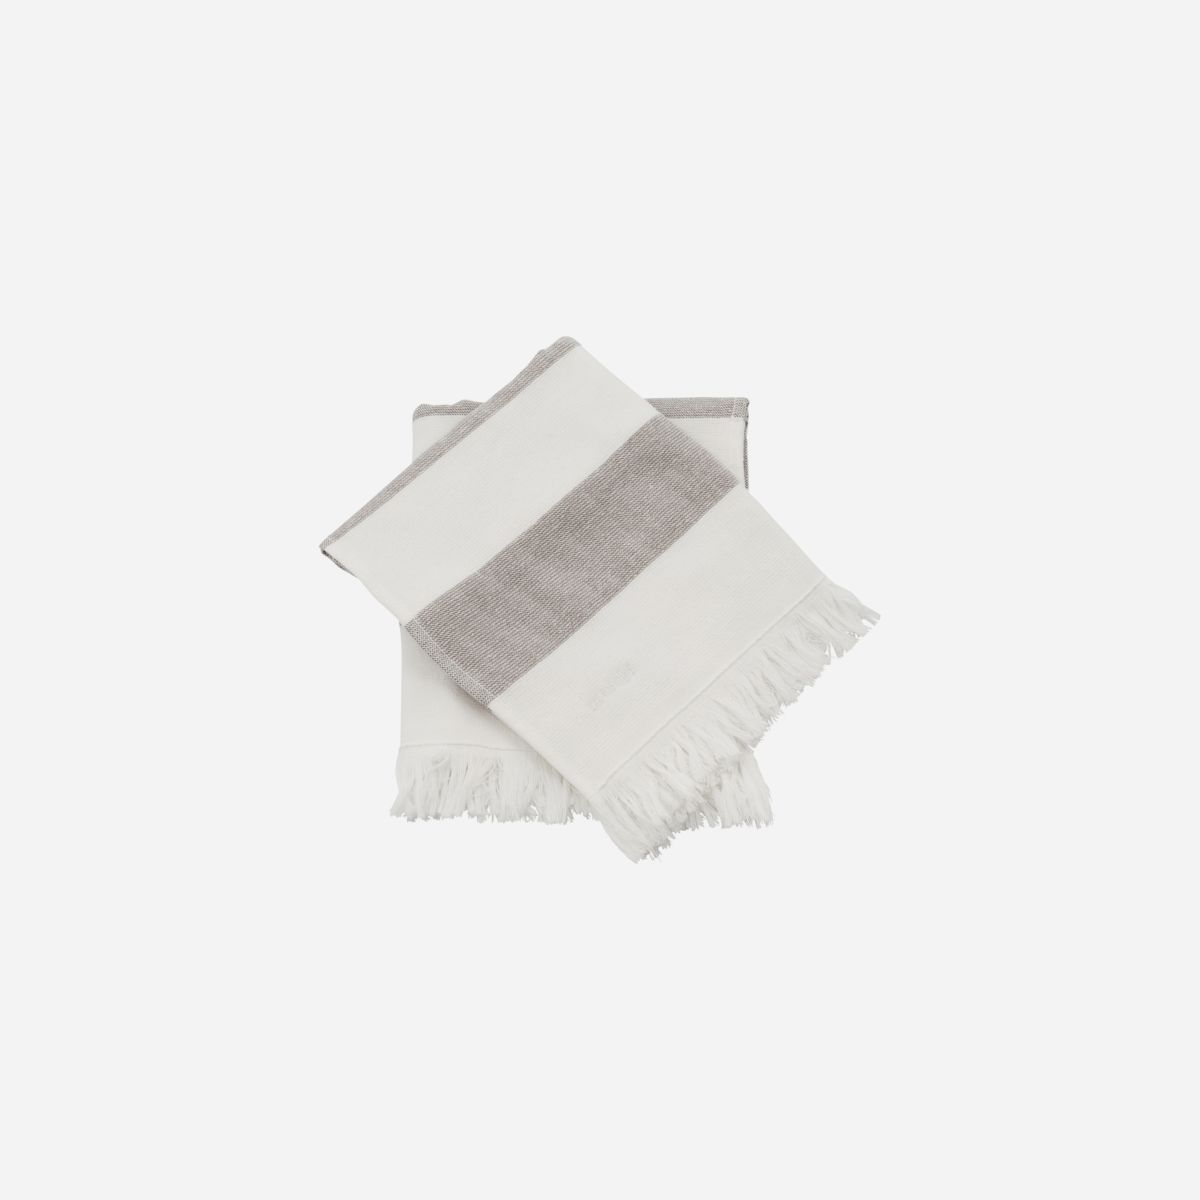 Håndklæde, Barbarum, Hvide og brune striber 40x60 cm, 2 stk